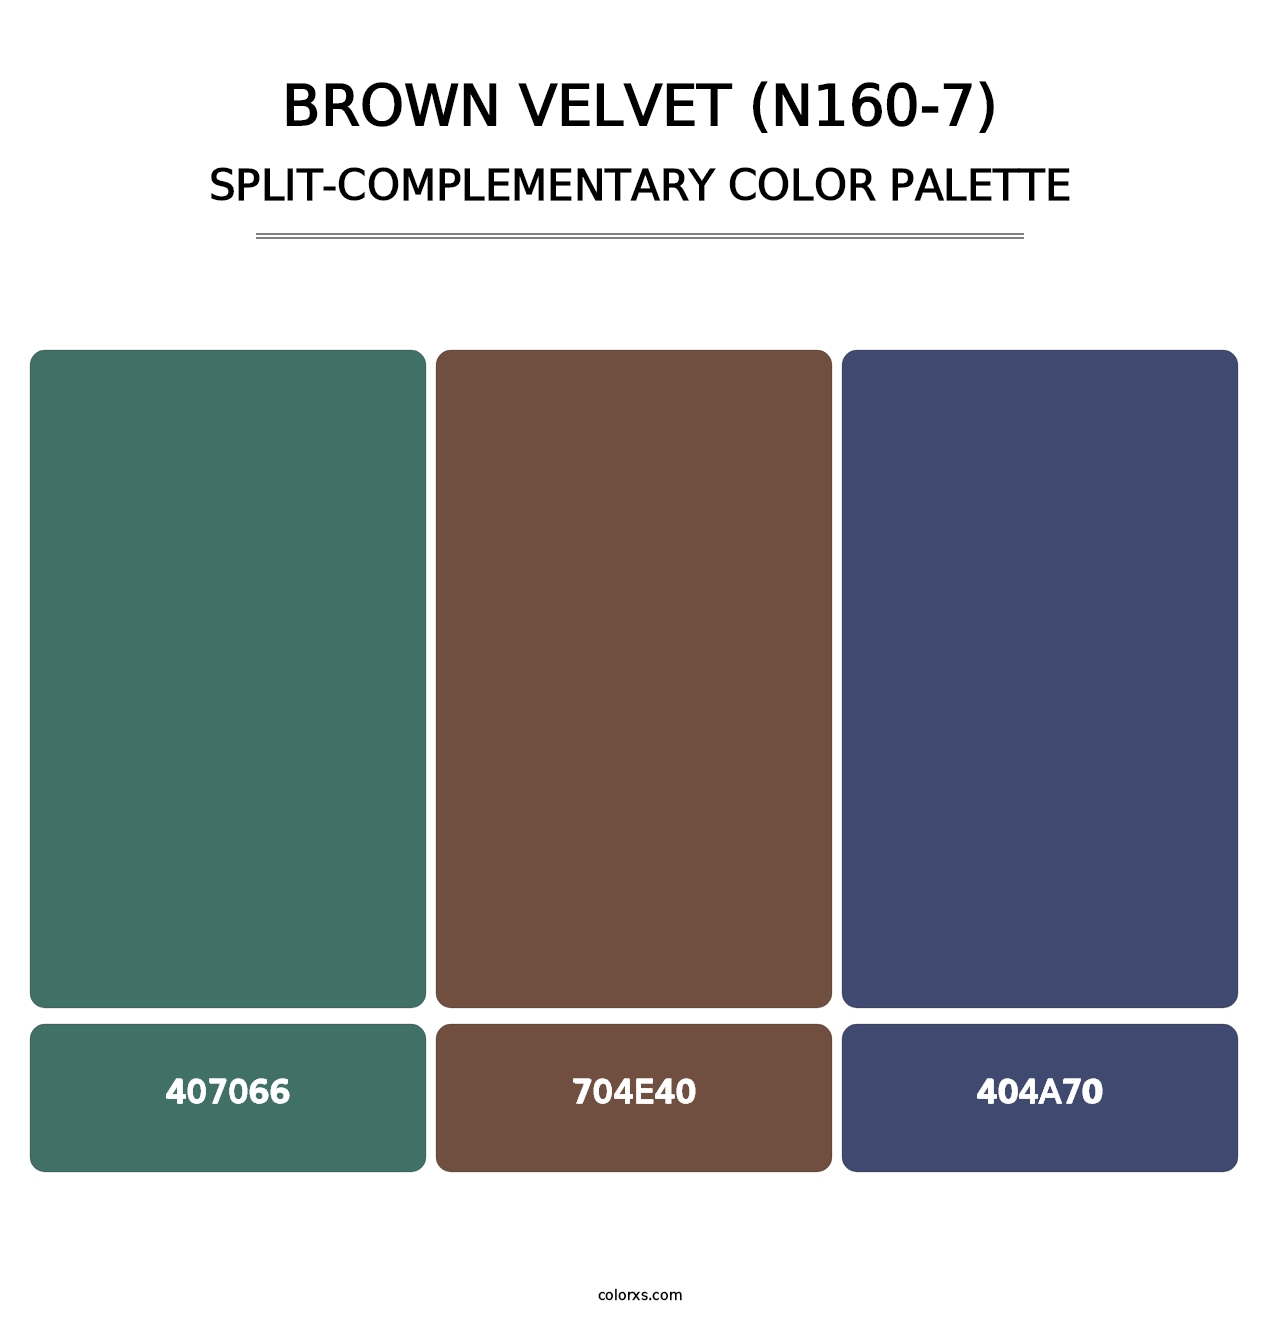 Brown Velvet (N160-7) - Split-Complementary Color Palette